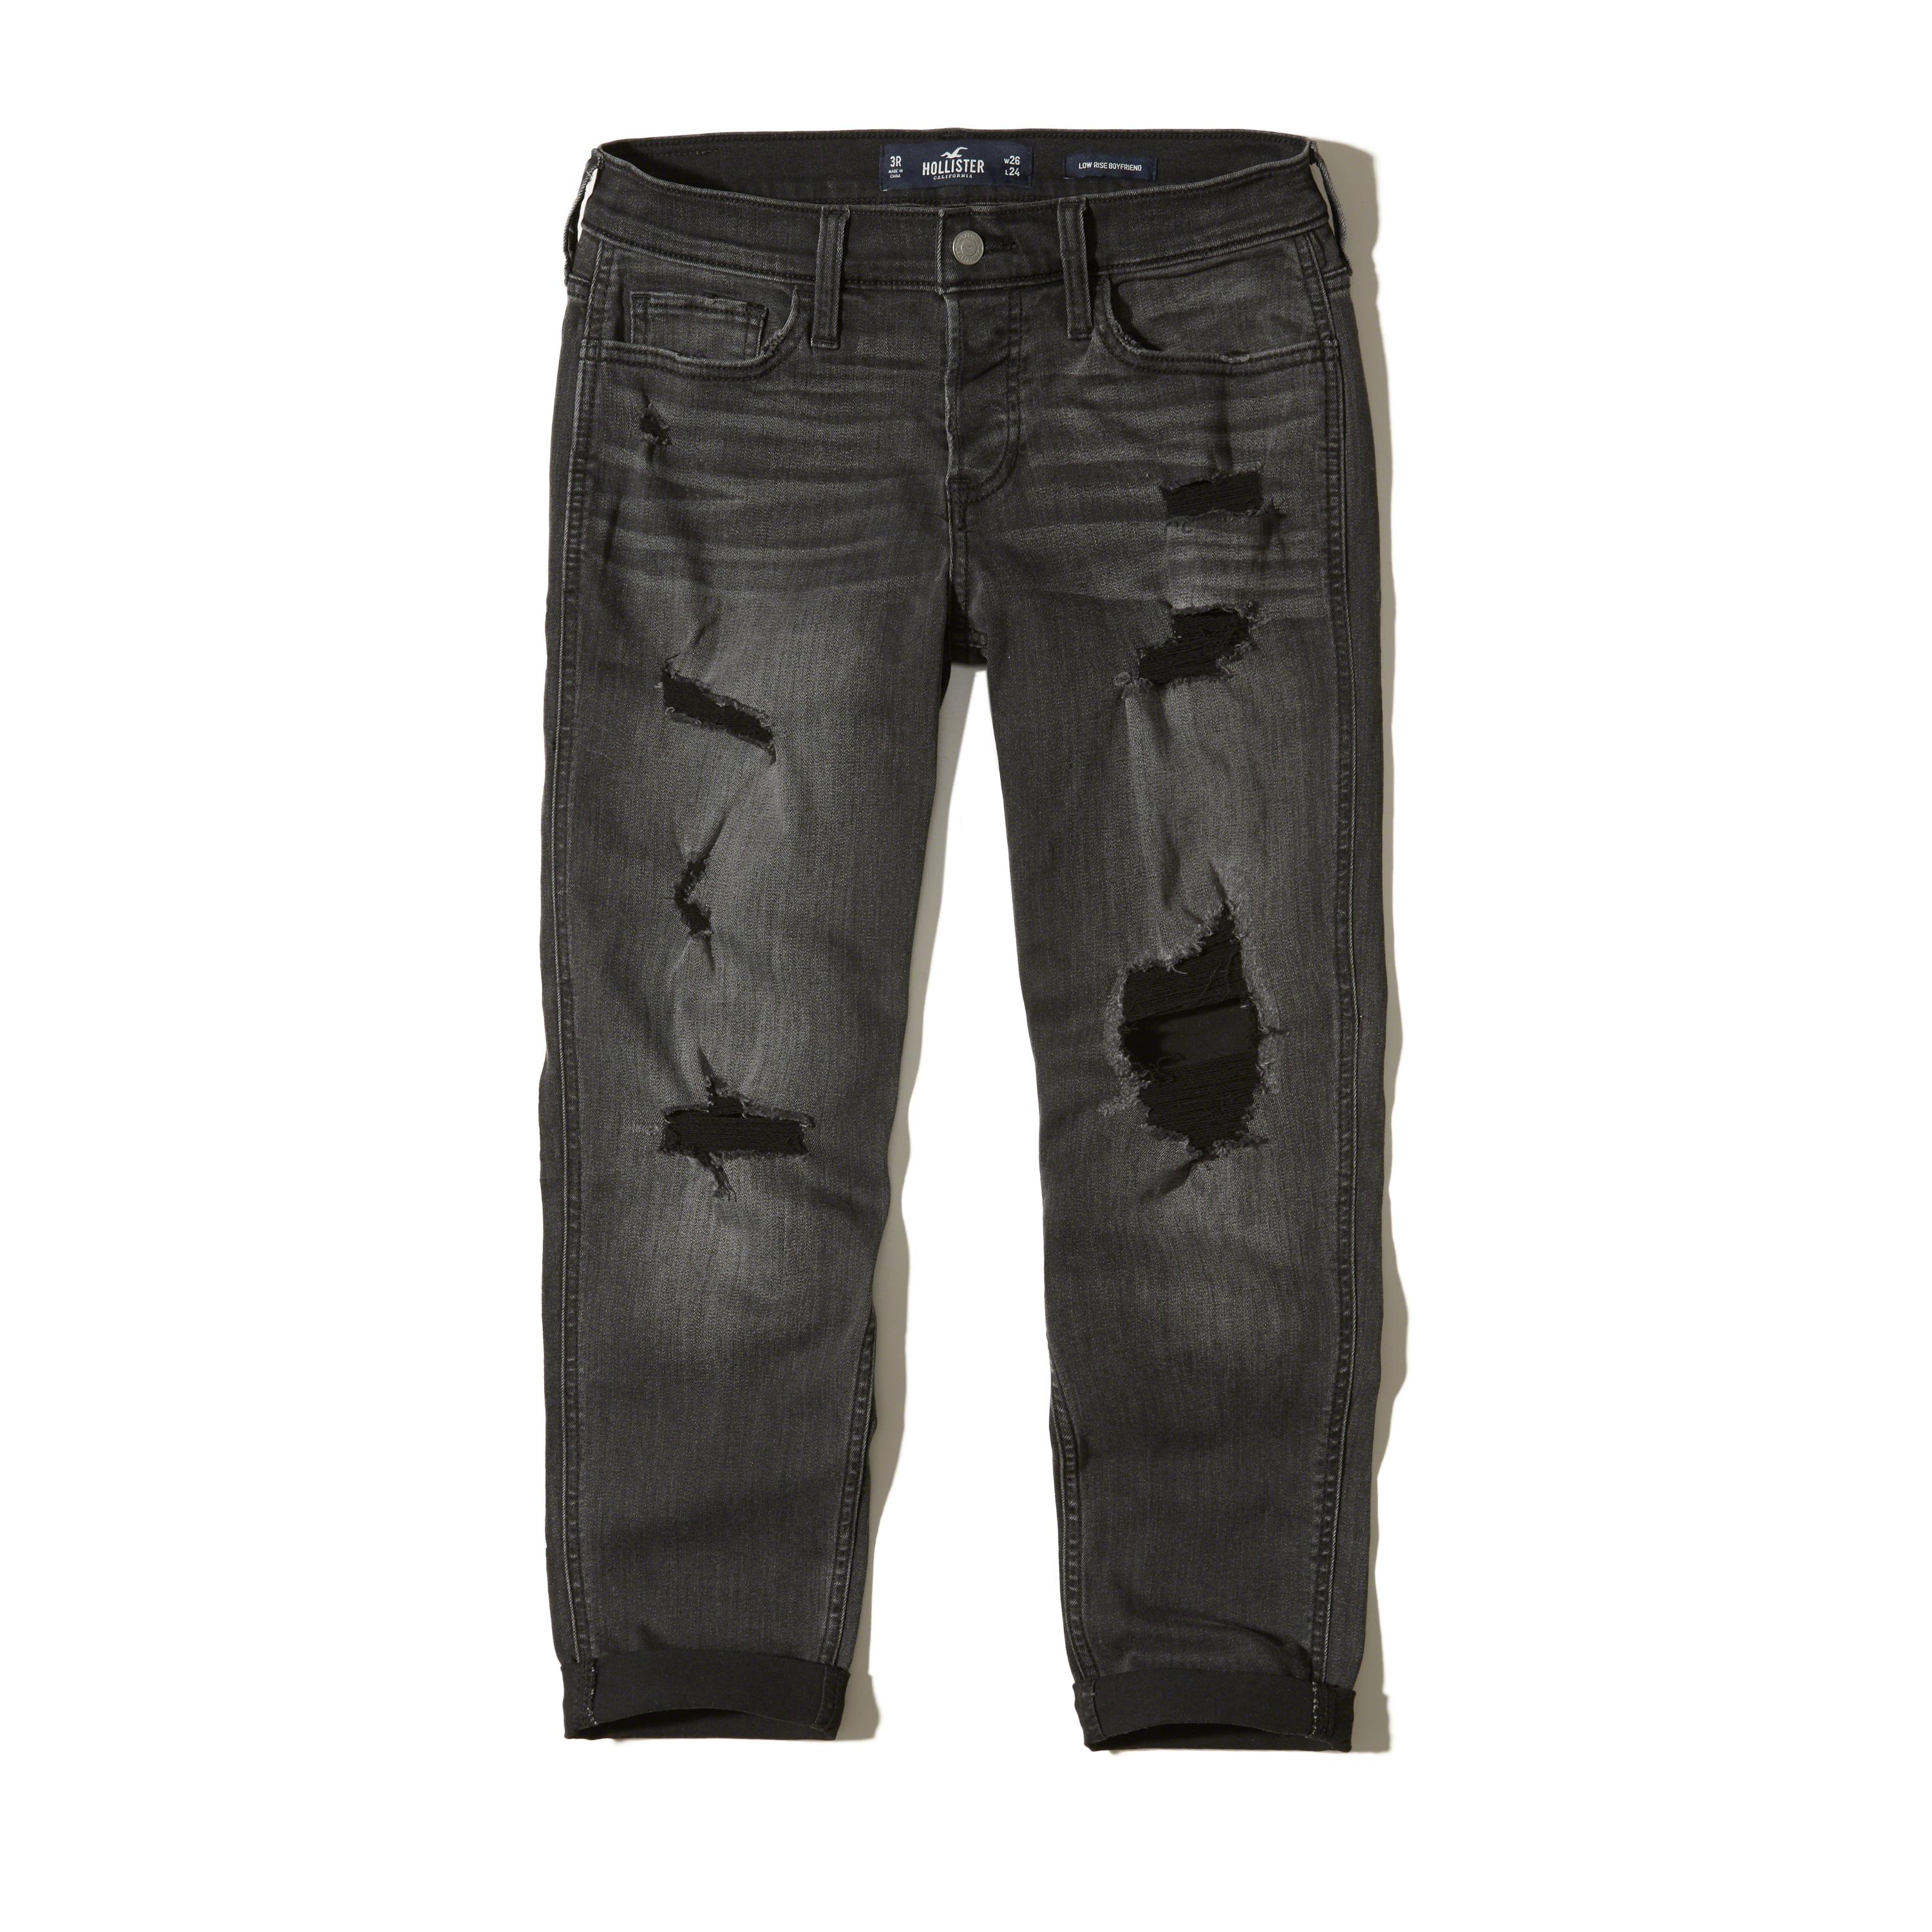 Lyst - Hollister Low-rise Boyfriend Jeans in Black